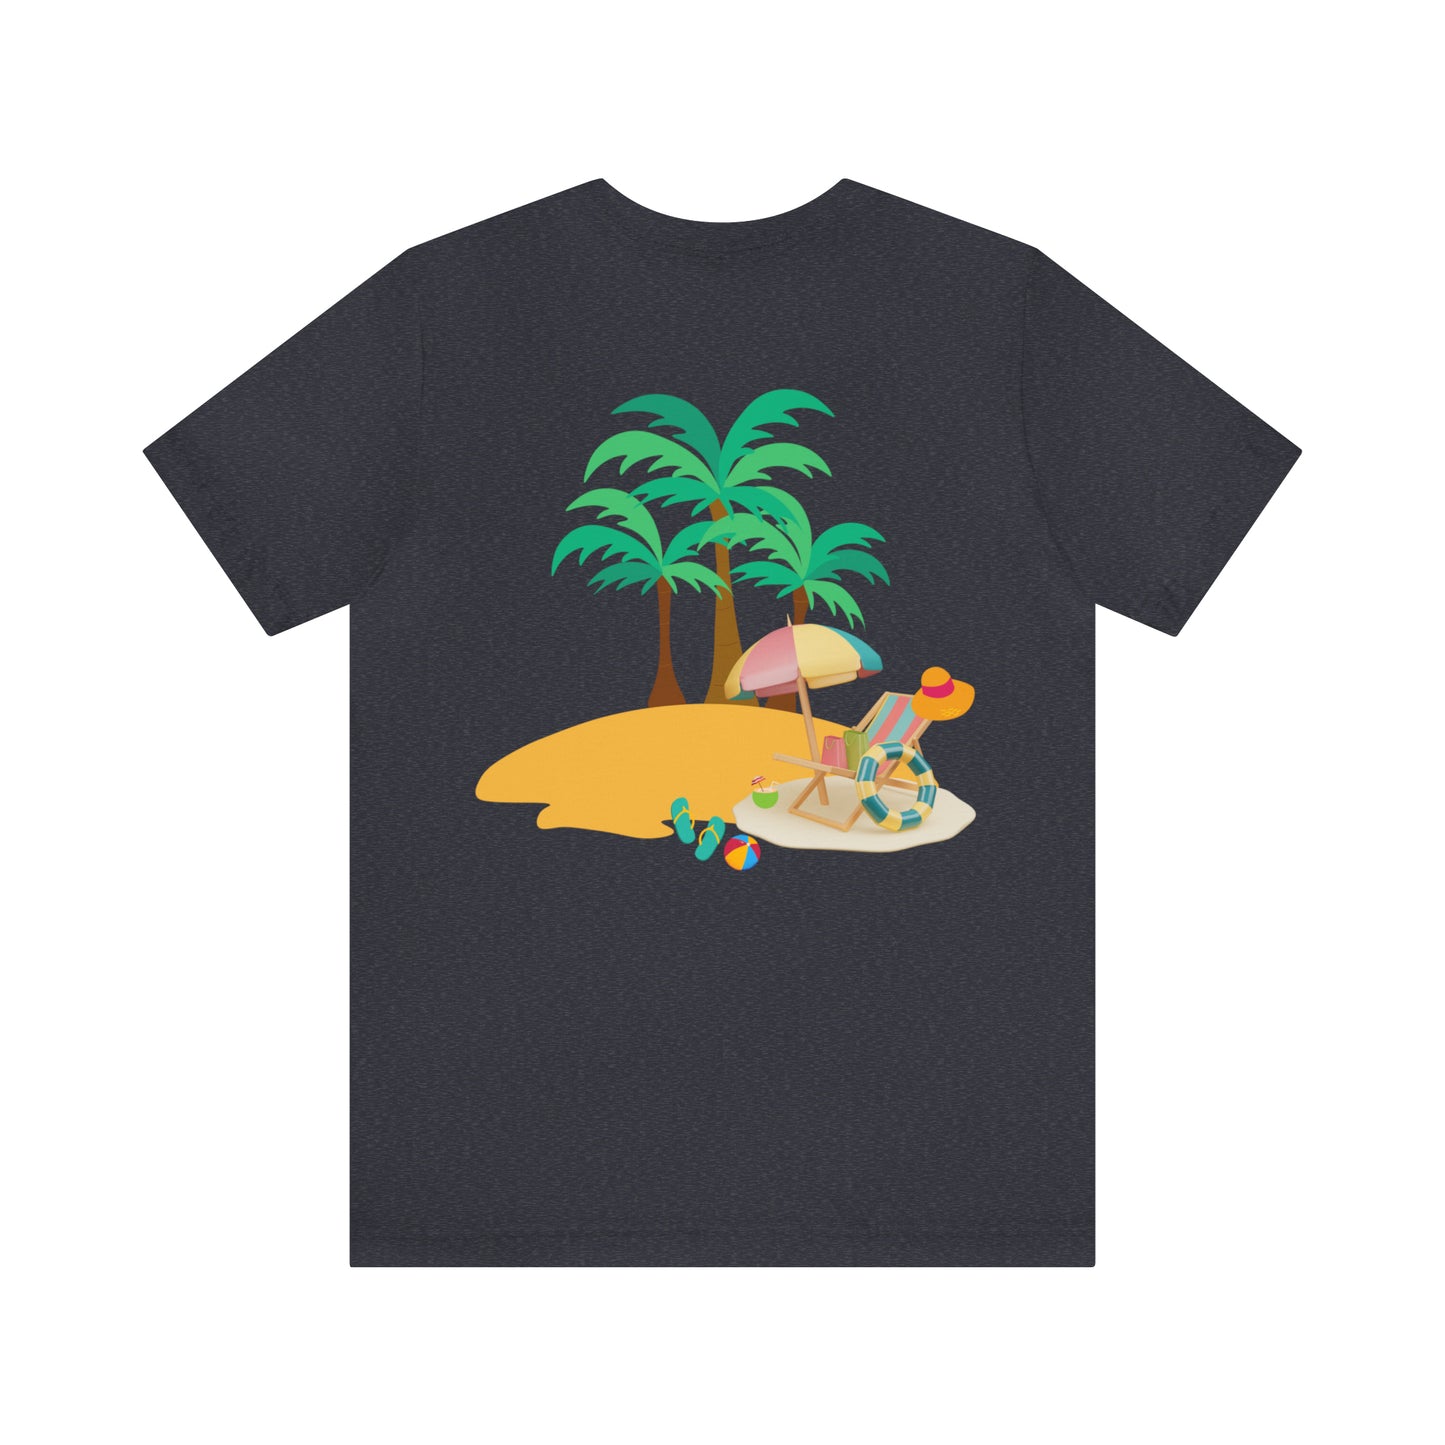 Beach shirt, summer shirts for women, beach shirts for women, beach shirts for men, beach shirts funny, summer shirts aesthetic